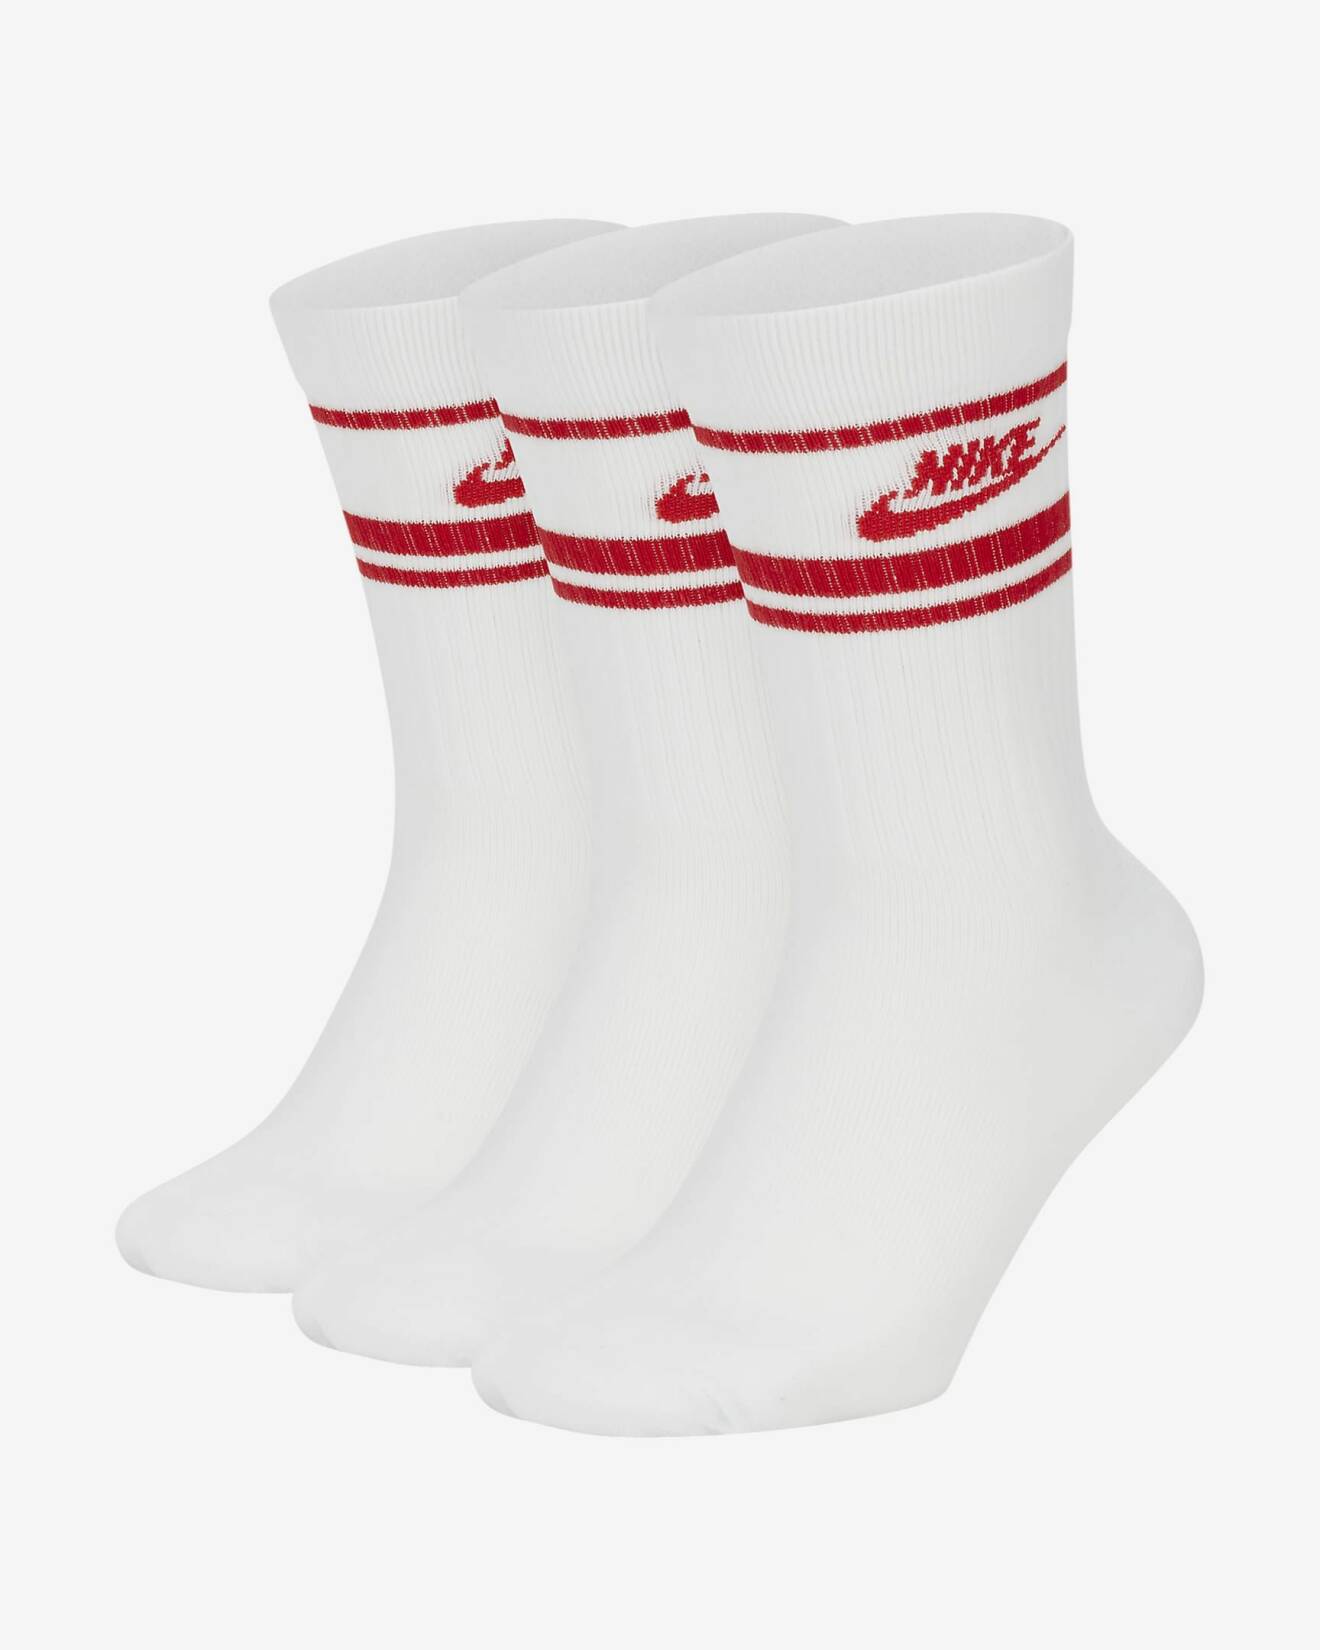 Vita strumpor med röd logga högst upp. Sportstrumpor från Nike.